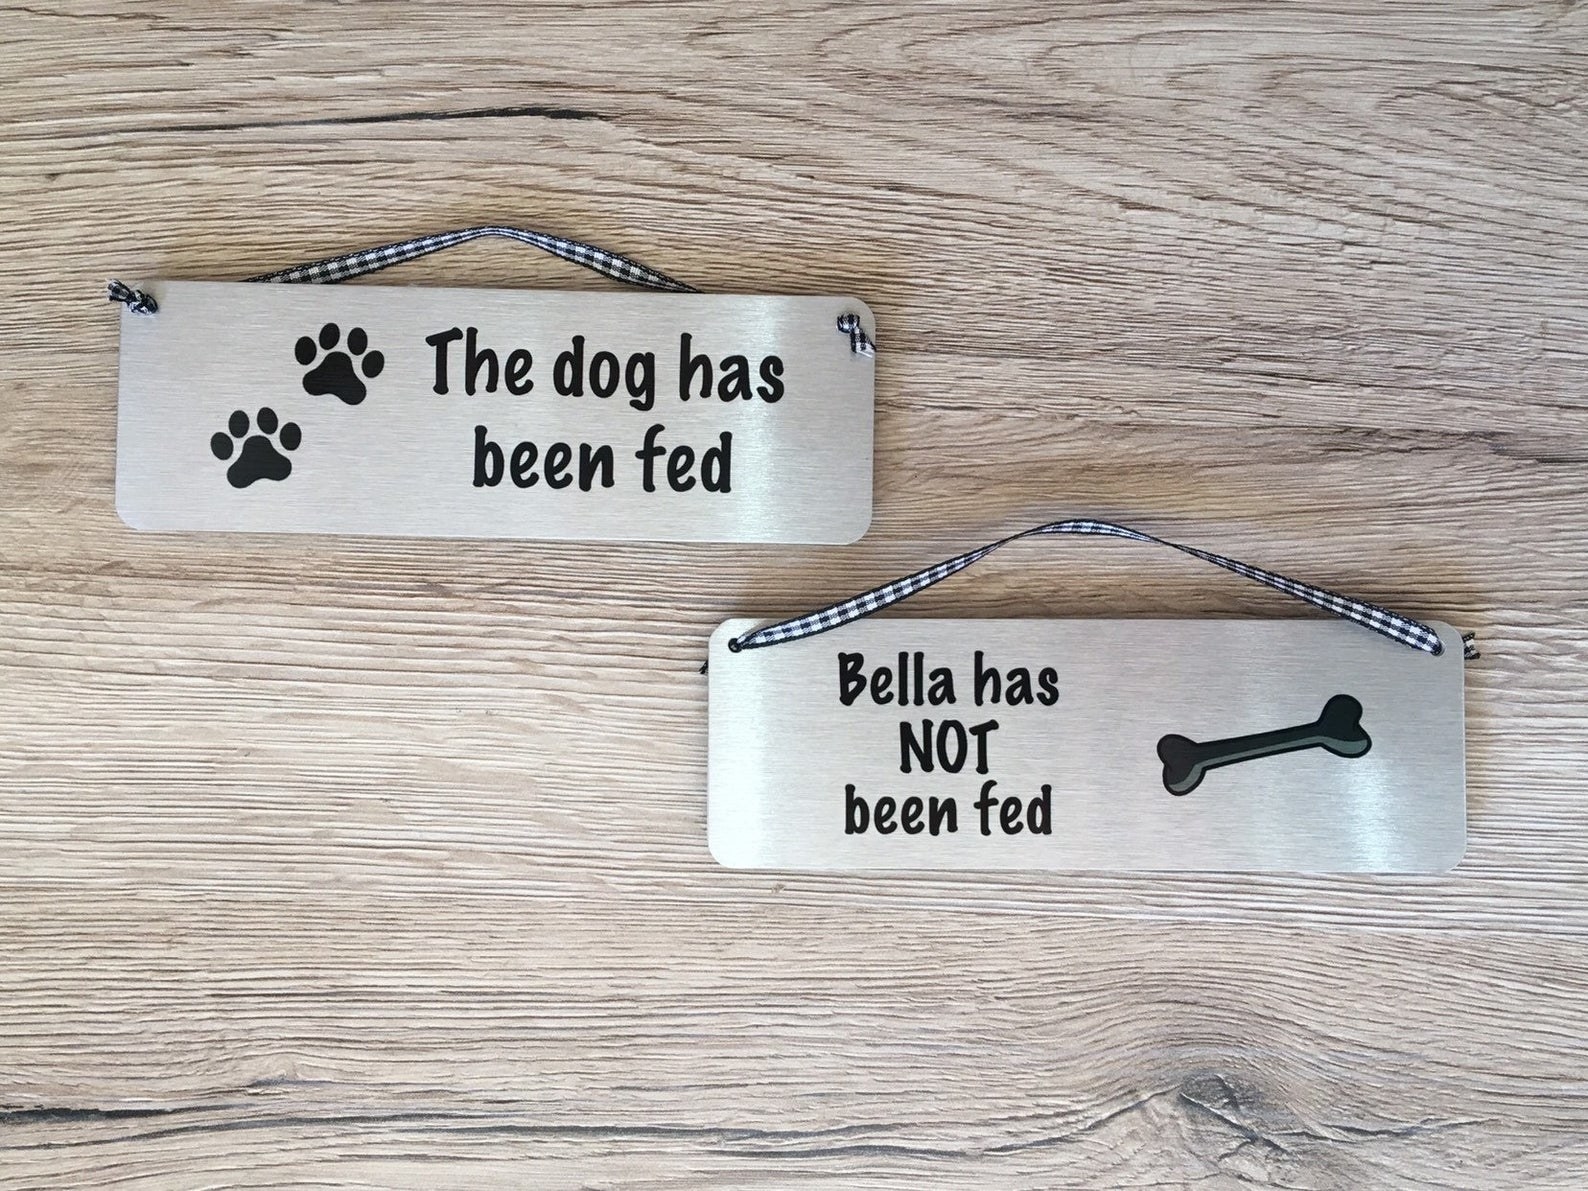 一只狗标签与一个小绳挂在顶部。一边说“狗喂!”另一个标签显示了另一边说,“贝拉没有美联储!”